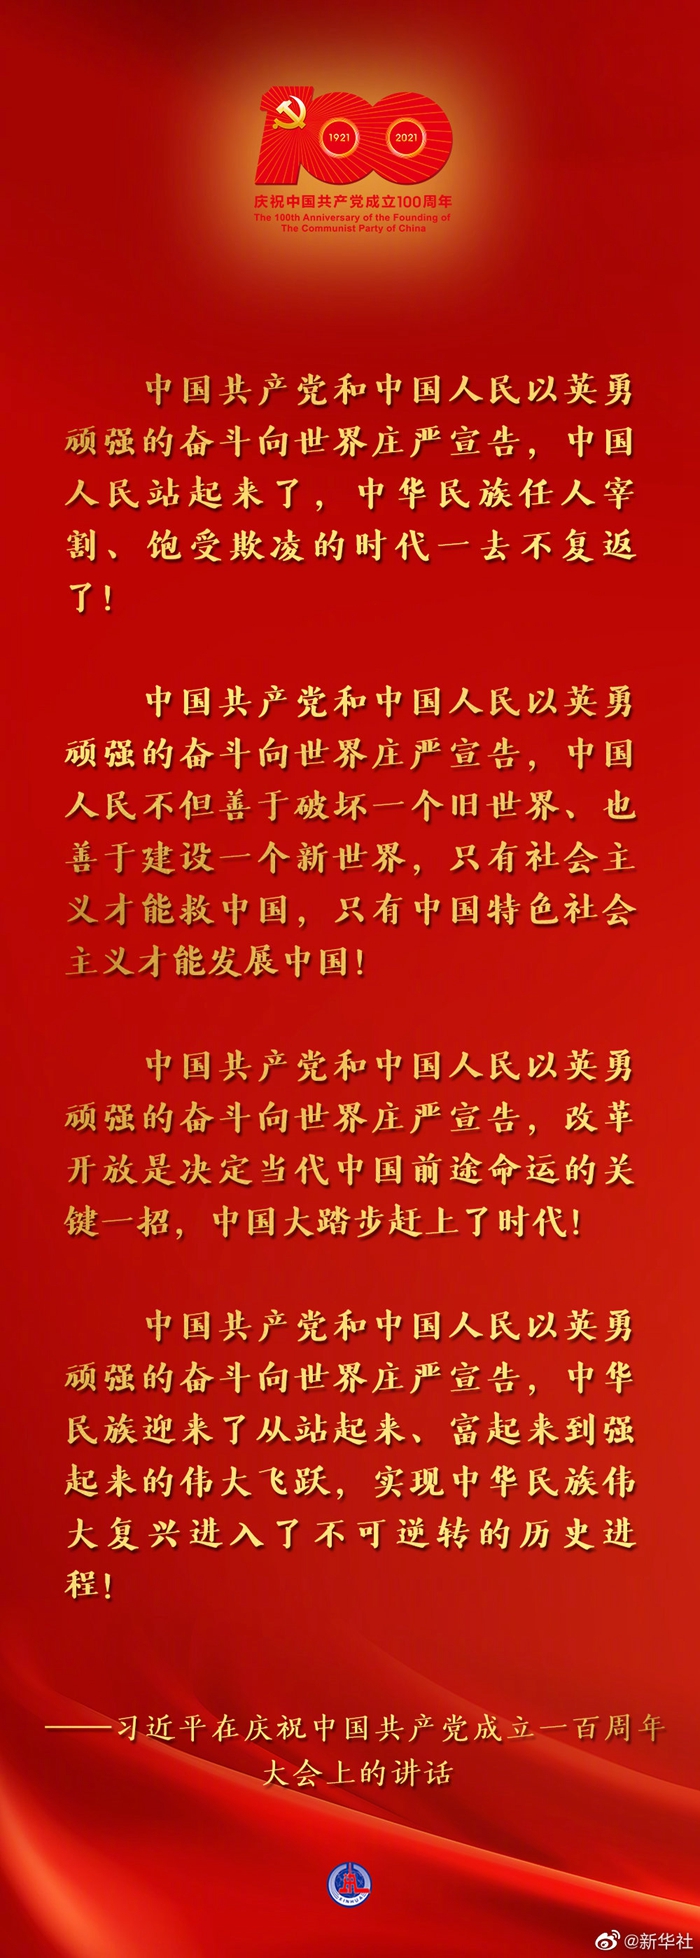 习近平说，为了实现中华民族伟大复兴，中国共产党团结带领中国人民，自信自强、守正创新，统揽伟大斗争、伟大工程、伟大事业、伟大梦想，创造了新时代中国特色社会主义的伟大成就